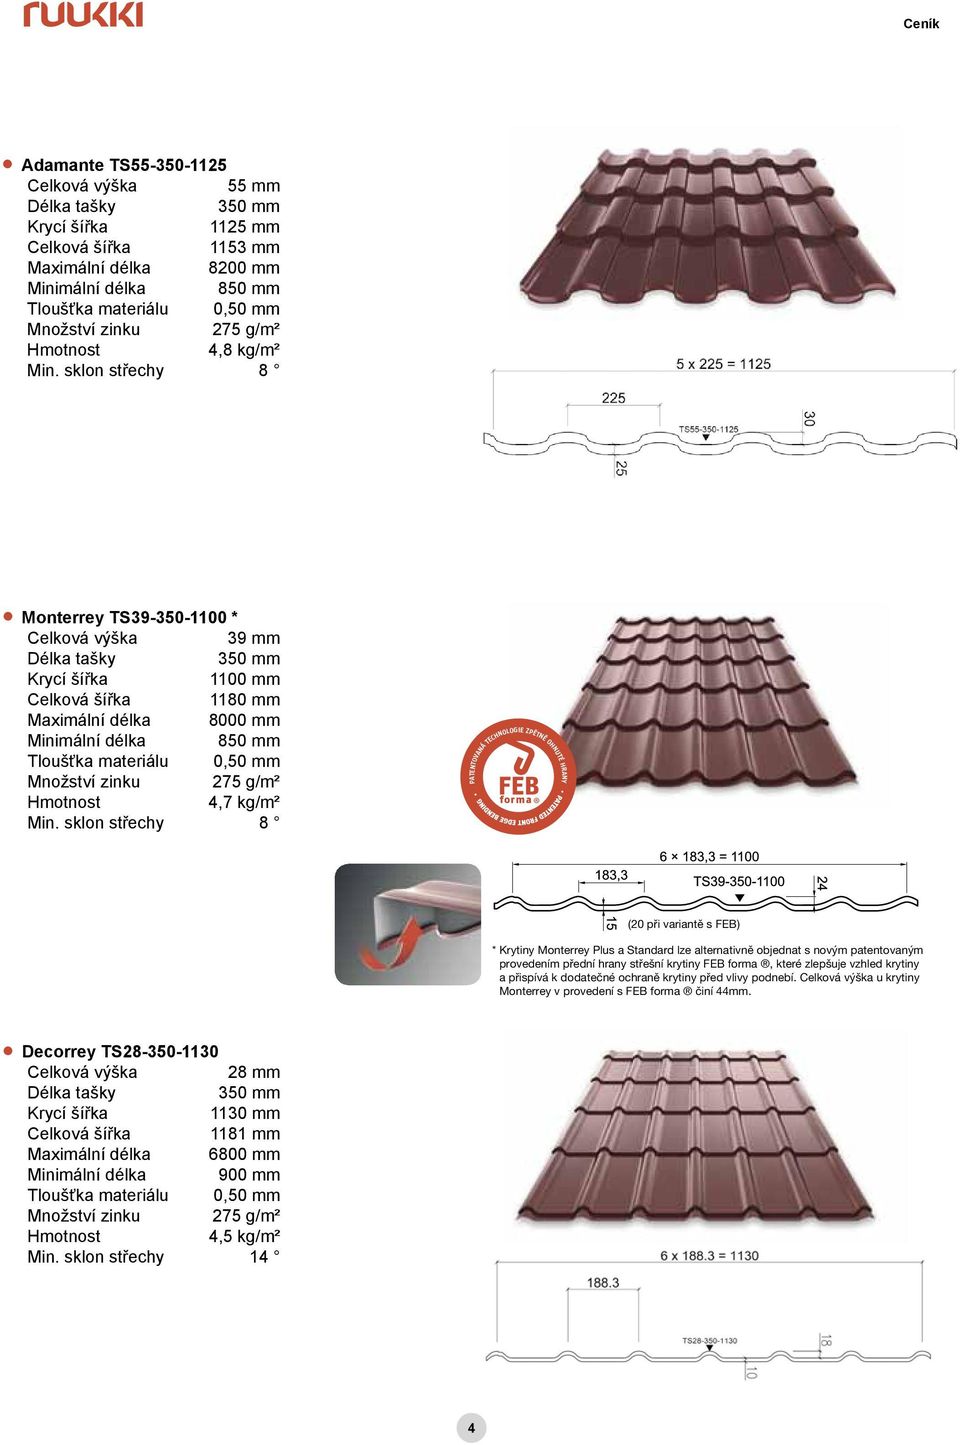 sklon střechy 8 PATENTOVANÁ TECHNOLOGIE ZPĚTNĚ OHNUTÉ HRANY (20 při variantě s FEB) * Krytiny Monterrey Plus a Standard lze alternativně objednat s novým patentovaným provedením přední hrany střešní